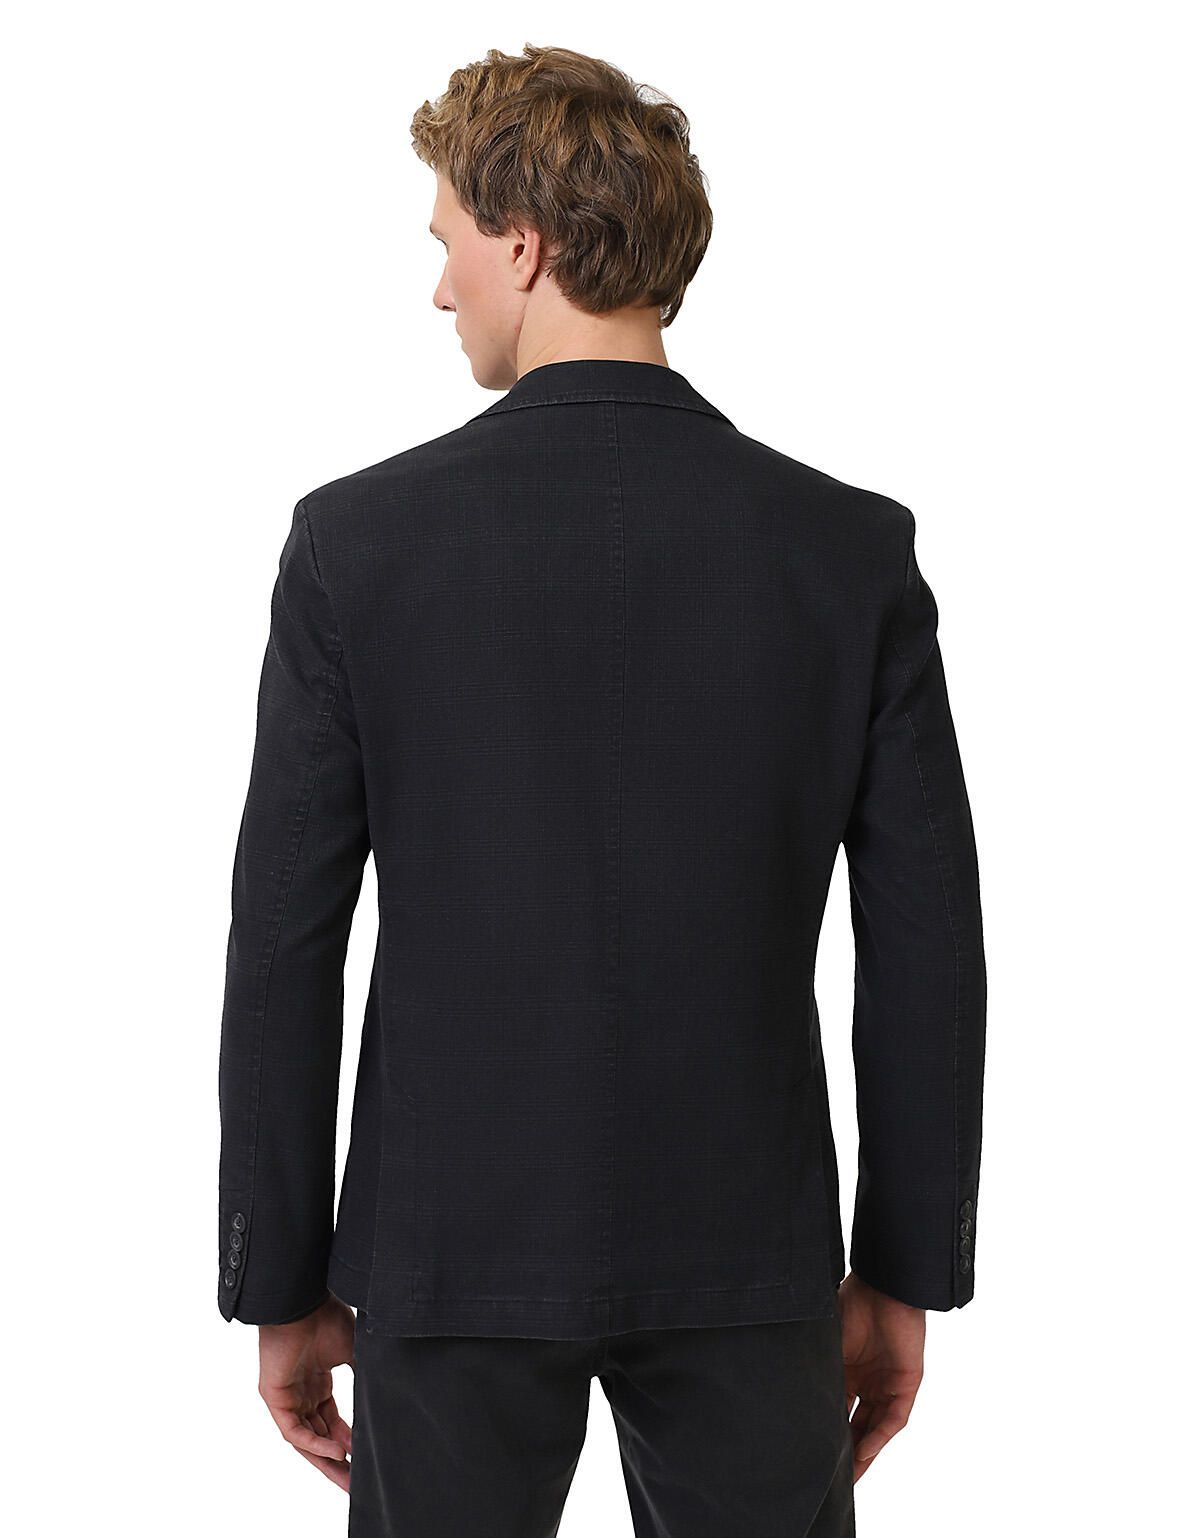 Пиджак хлопковый мужской в клетку, 2 шлицы | купить в интернет-магазине Olymp-Men